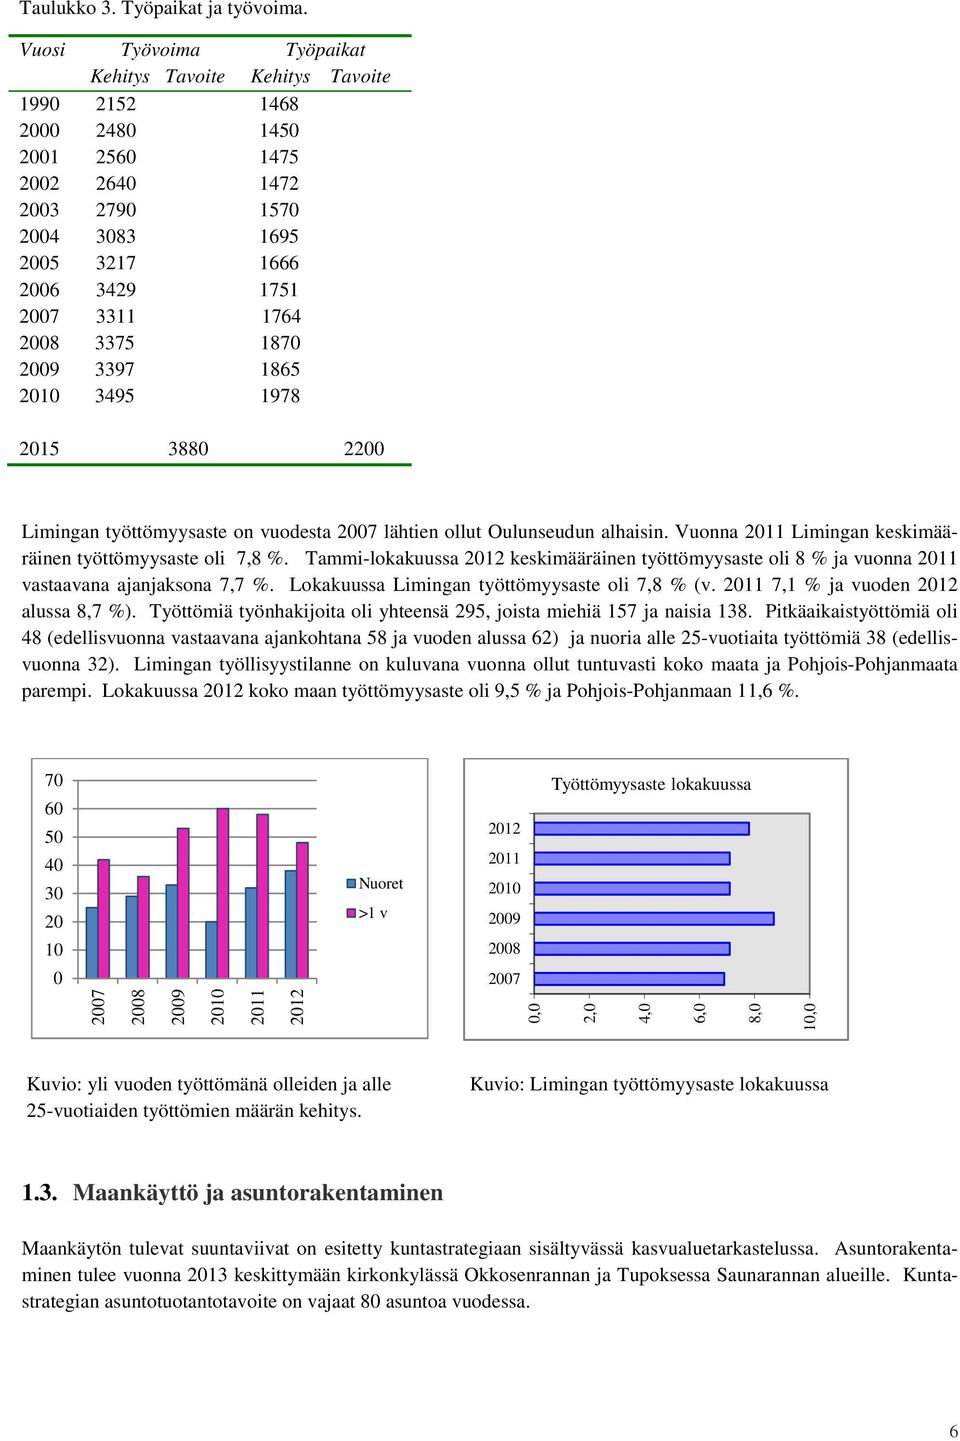 3375 1870 2009 3397 1865 2010 3495 1978 2015 3880 2200 Limingan työttömyysaste on vuodesta 2007 lähtien ollut Oulunseudun alhaisin. Vuonna 2011 Limingan keskimääräinen työttömyysaste oli 7,8 %.